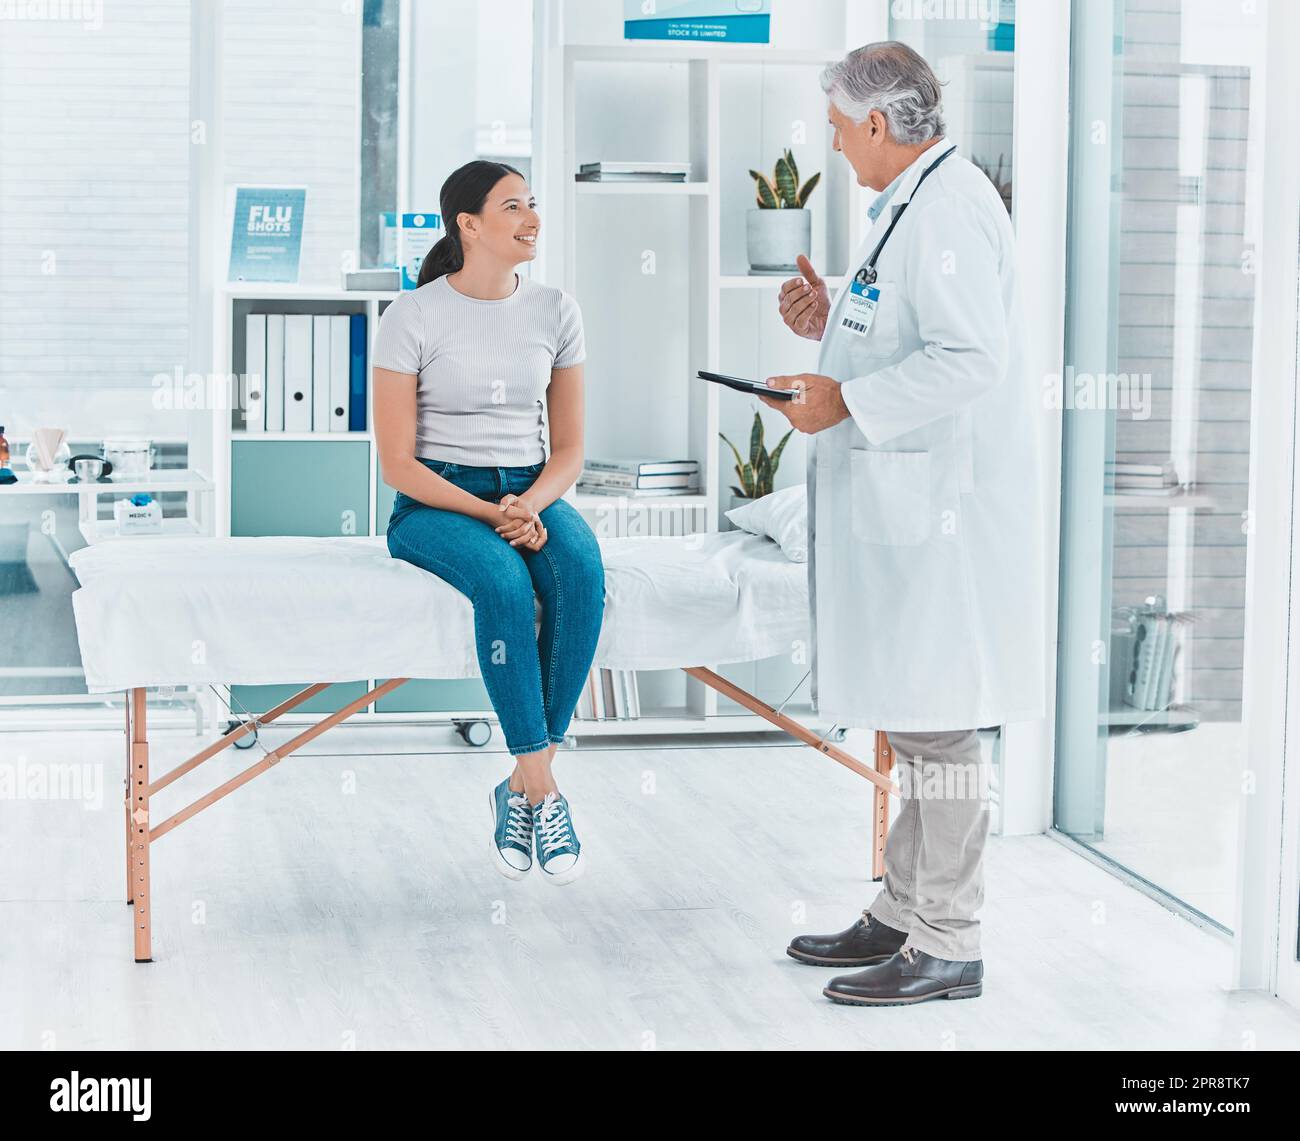 Dobbiamo discutere di alcune cose: Un medico che discute i risultati di un paziente con lei utilizzando un tablet digitale. Foto Stock